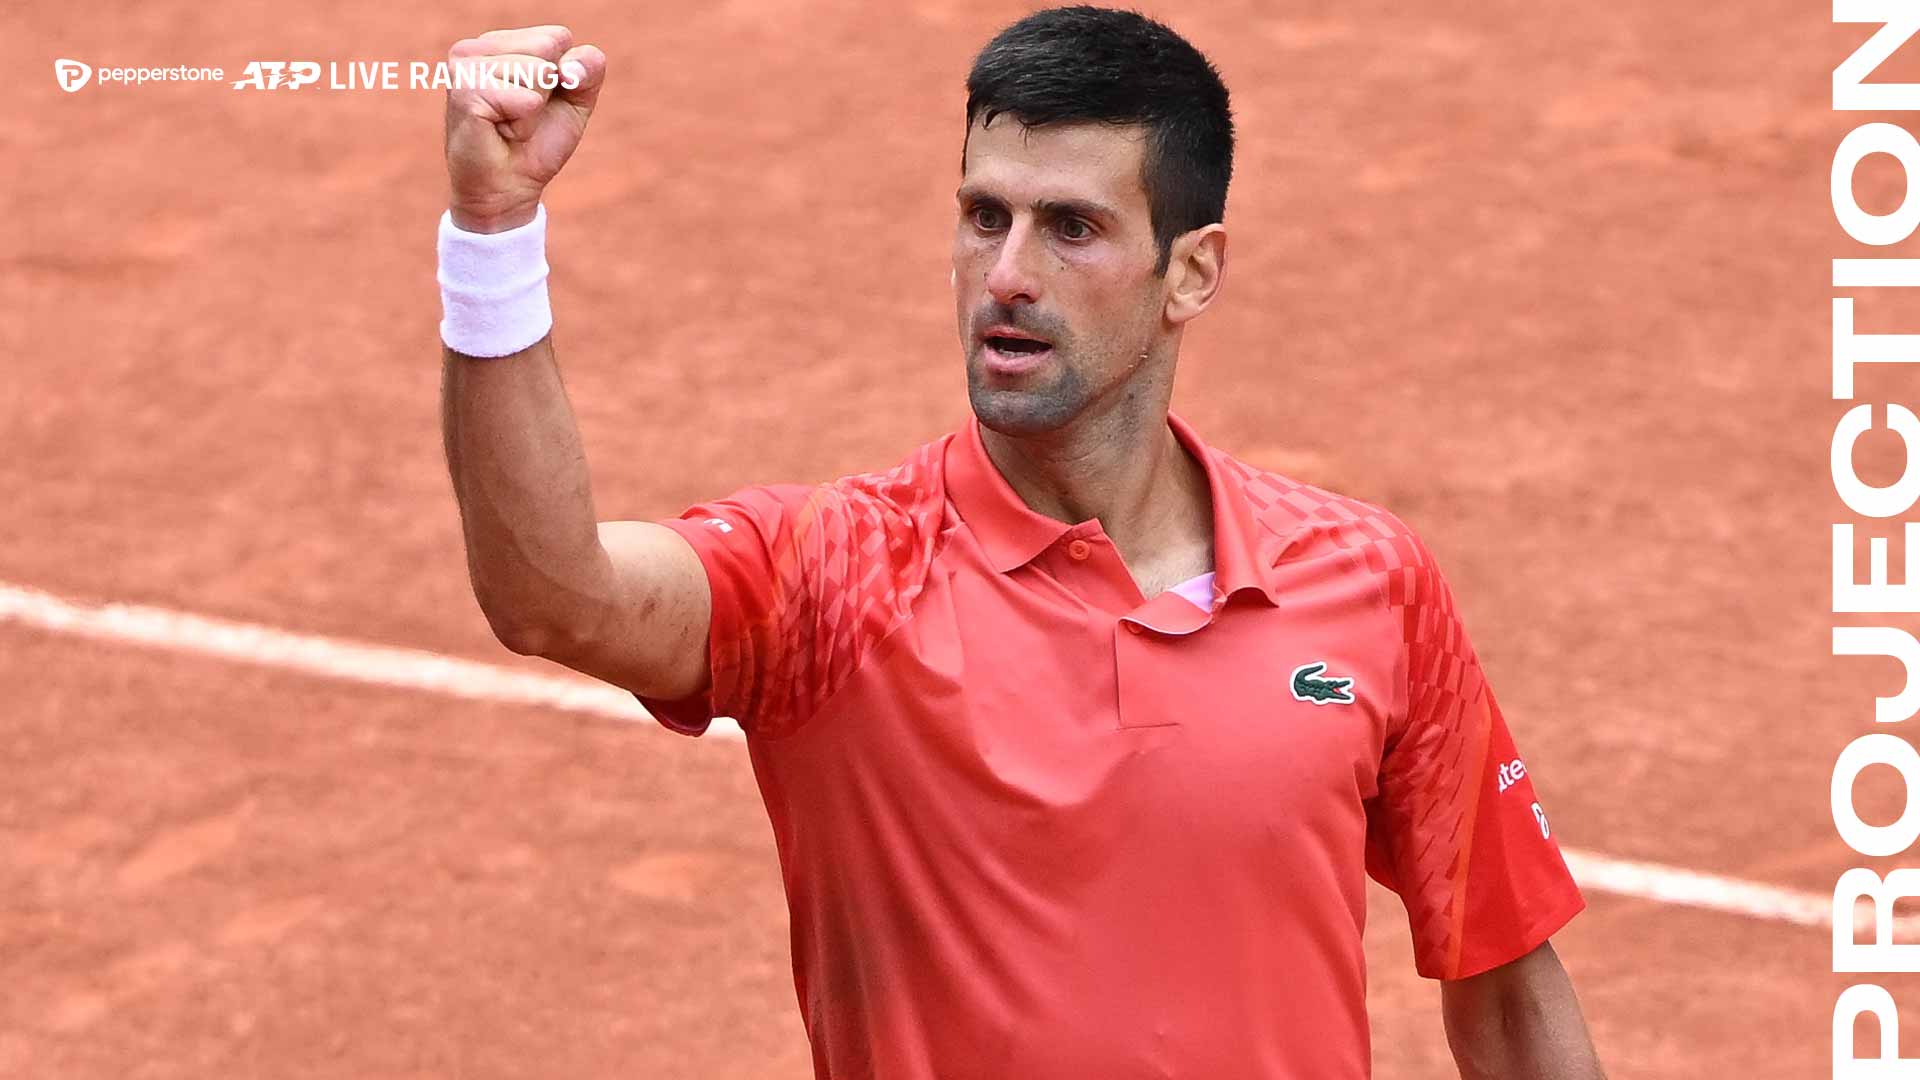 Novak Djokovic iniciará el lunes su 388ª semana como No. 1 del mundo en el Pepperstone ATP Ranking.